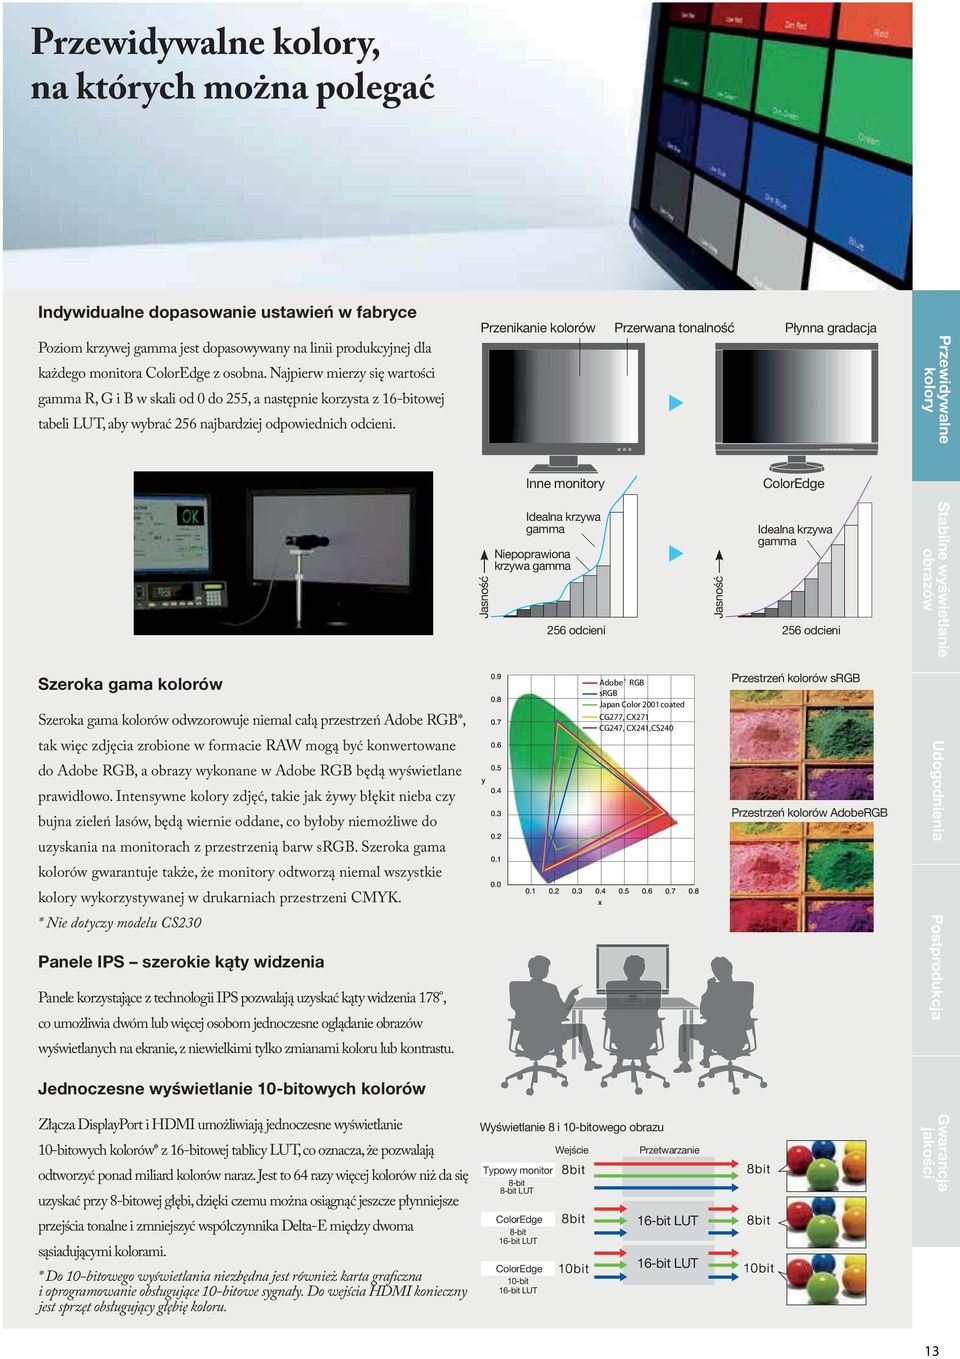 Przenikanie kolorów Przerwana tonalność Płynna gradacja Przewidywalne kolory Inne monitory ColorEdge Jasność Idealna krzywa gamma Niepoprawiona krzywa gamma Jasność Idealna krzywa gamma 256 odcieni